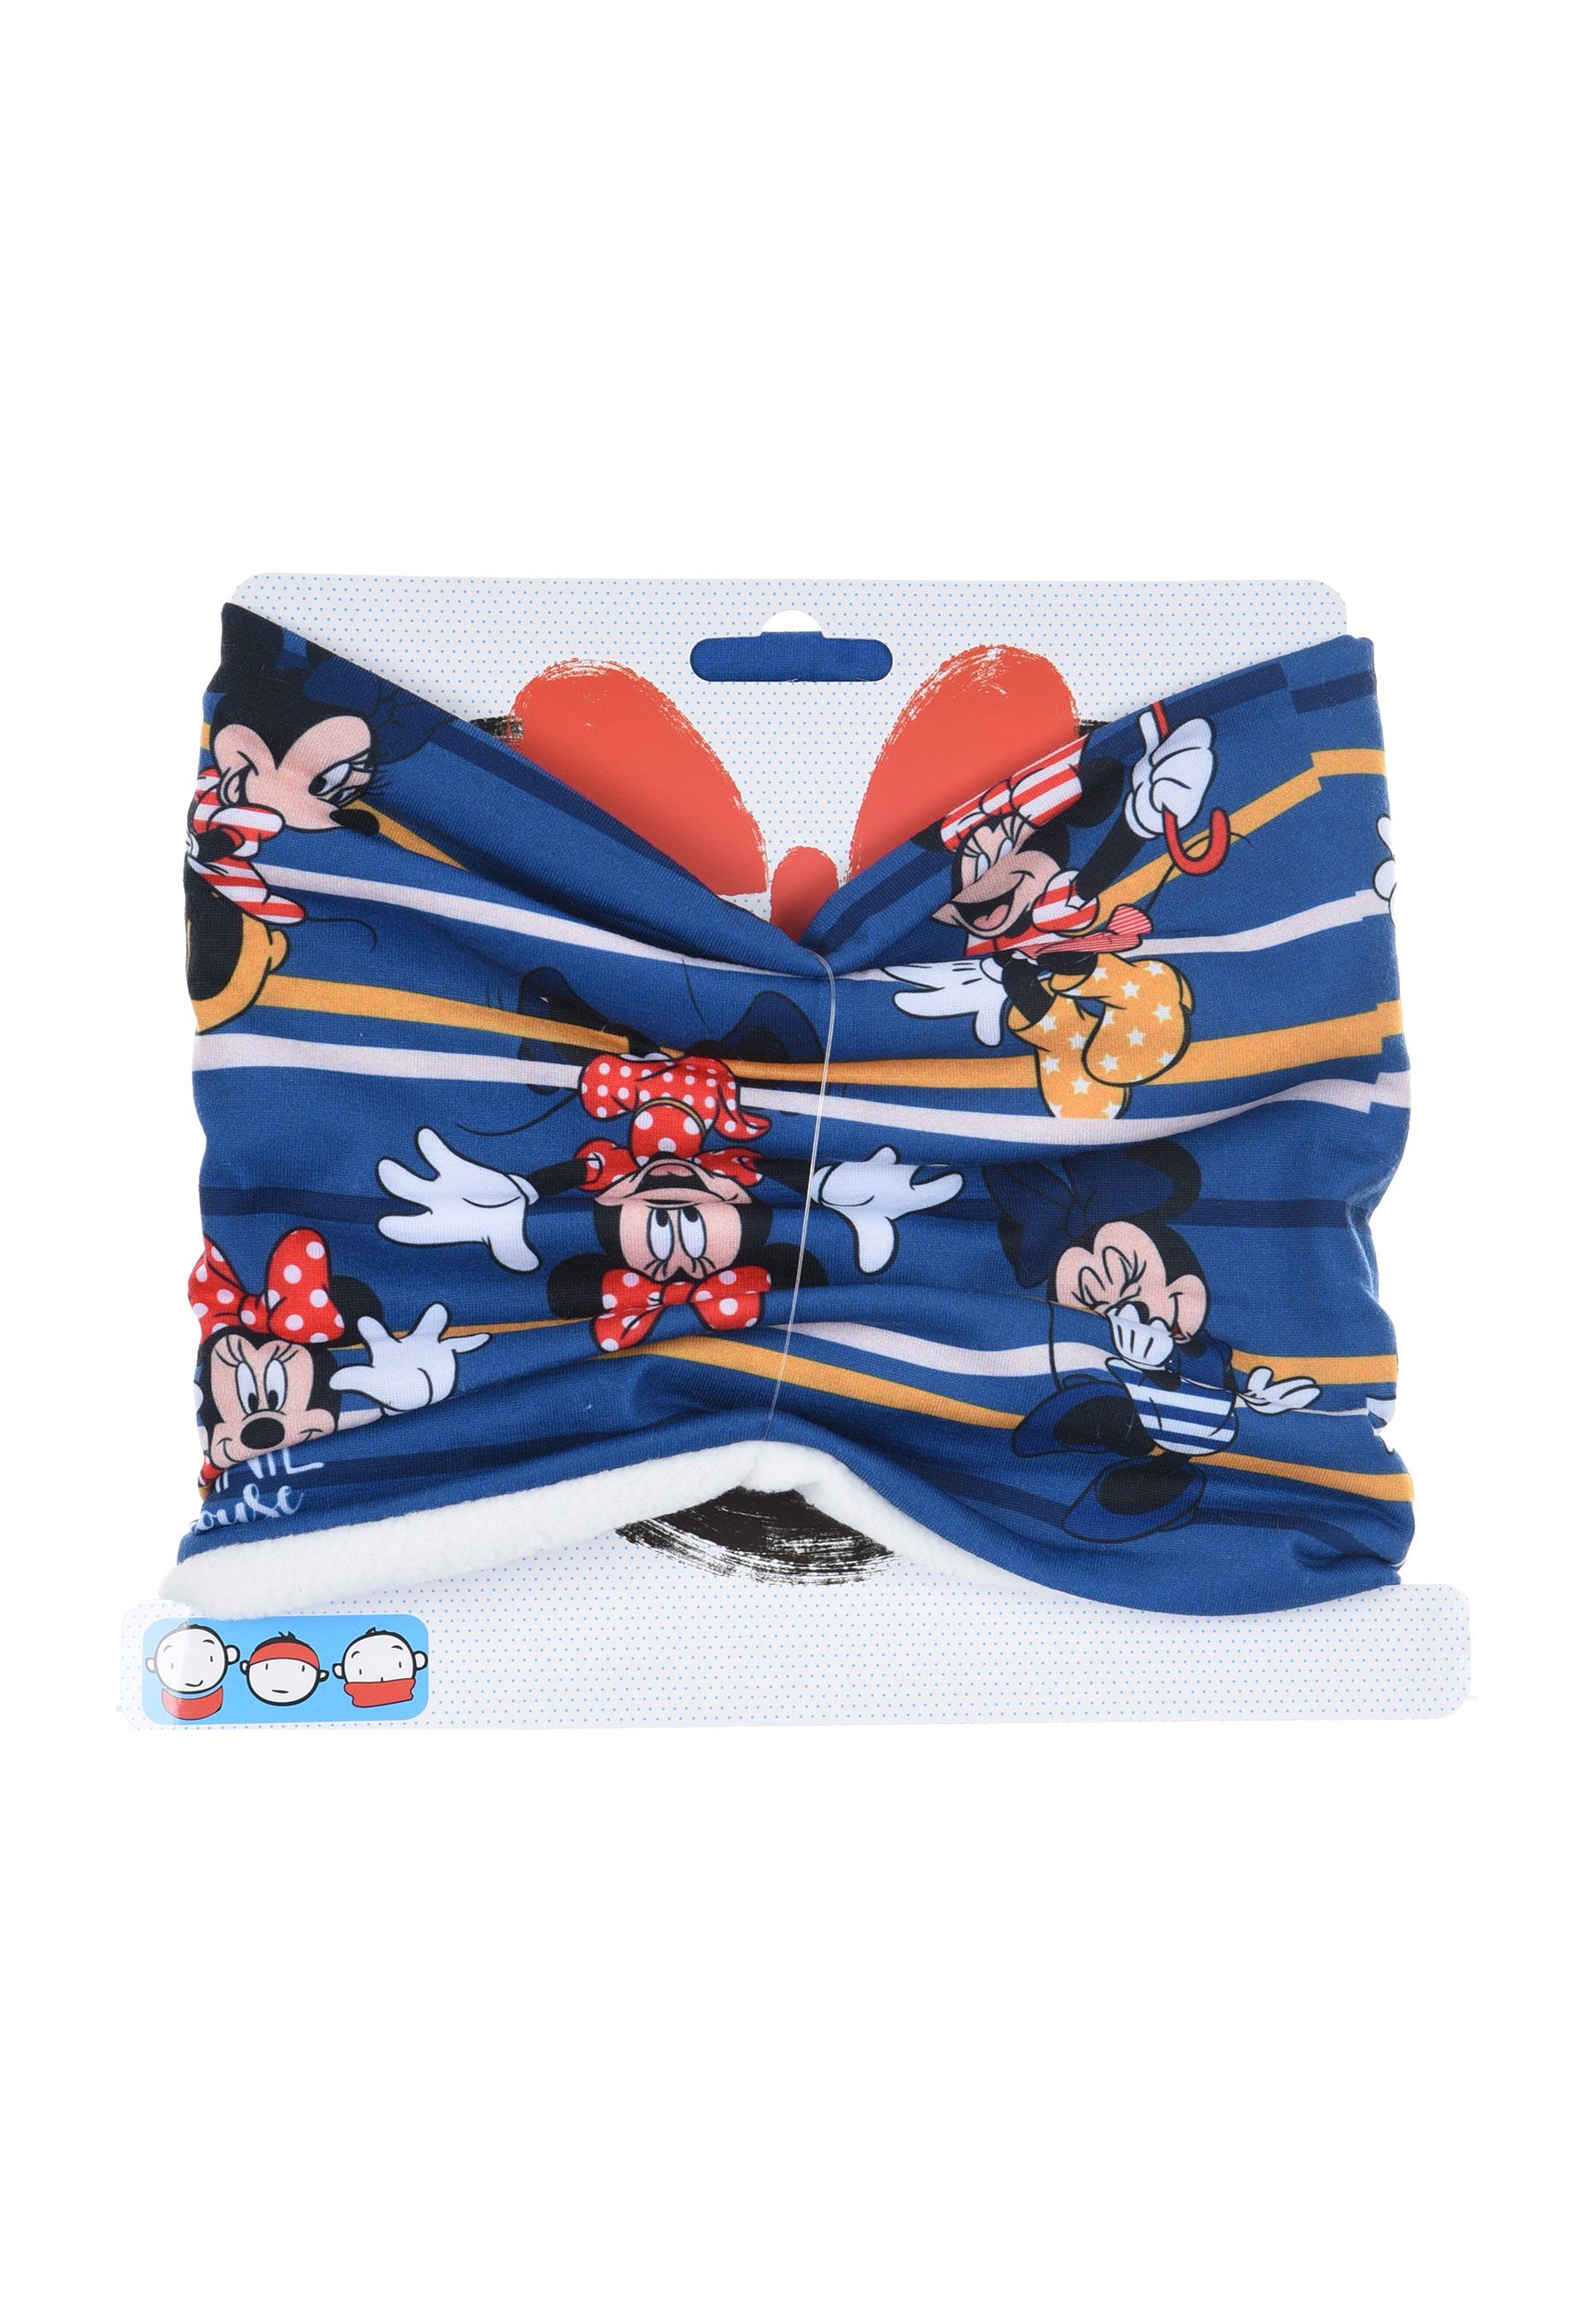 Kinder Disney Mini Winter-Schal Loop Mädchen Mouse Blau Minnie Schlauch-Schal, Maus